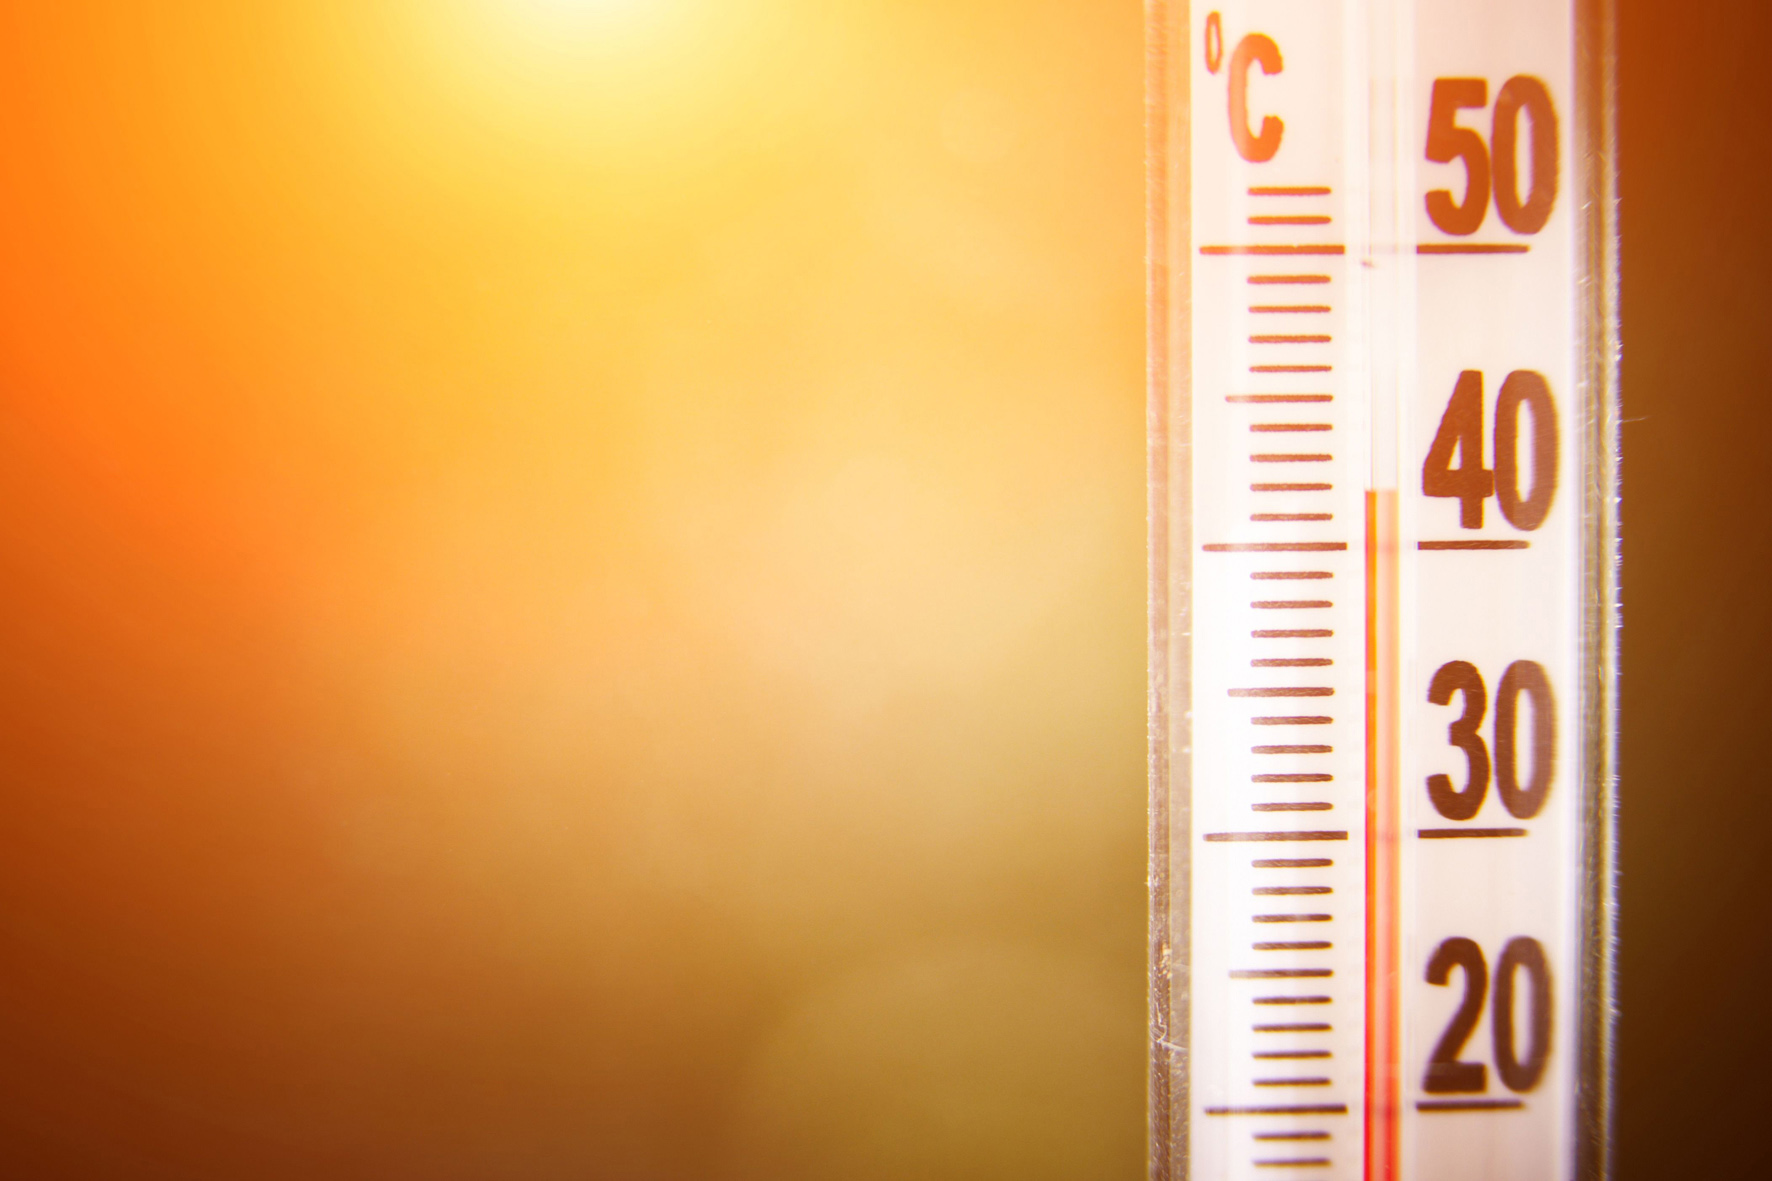 Sanidad emite avisos de riesgo para la salud por altas temperaturas en los próximo días en El Hierro